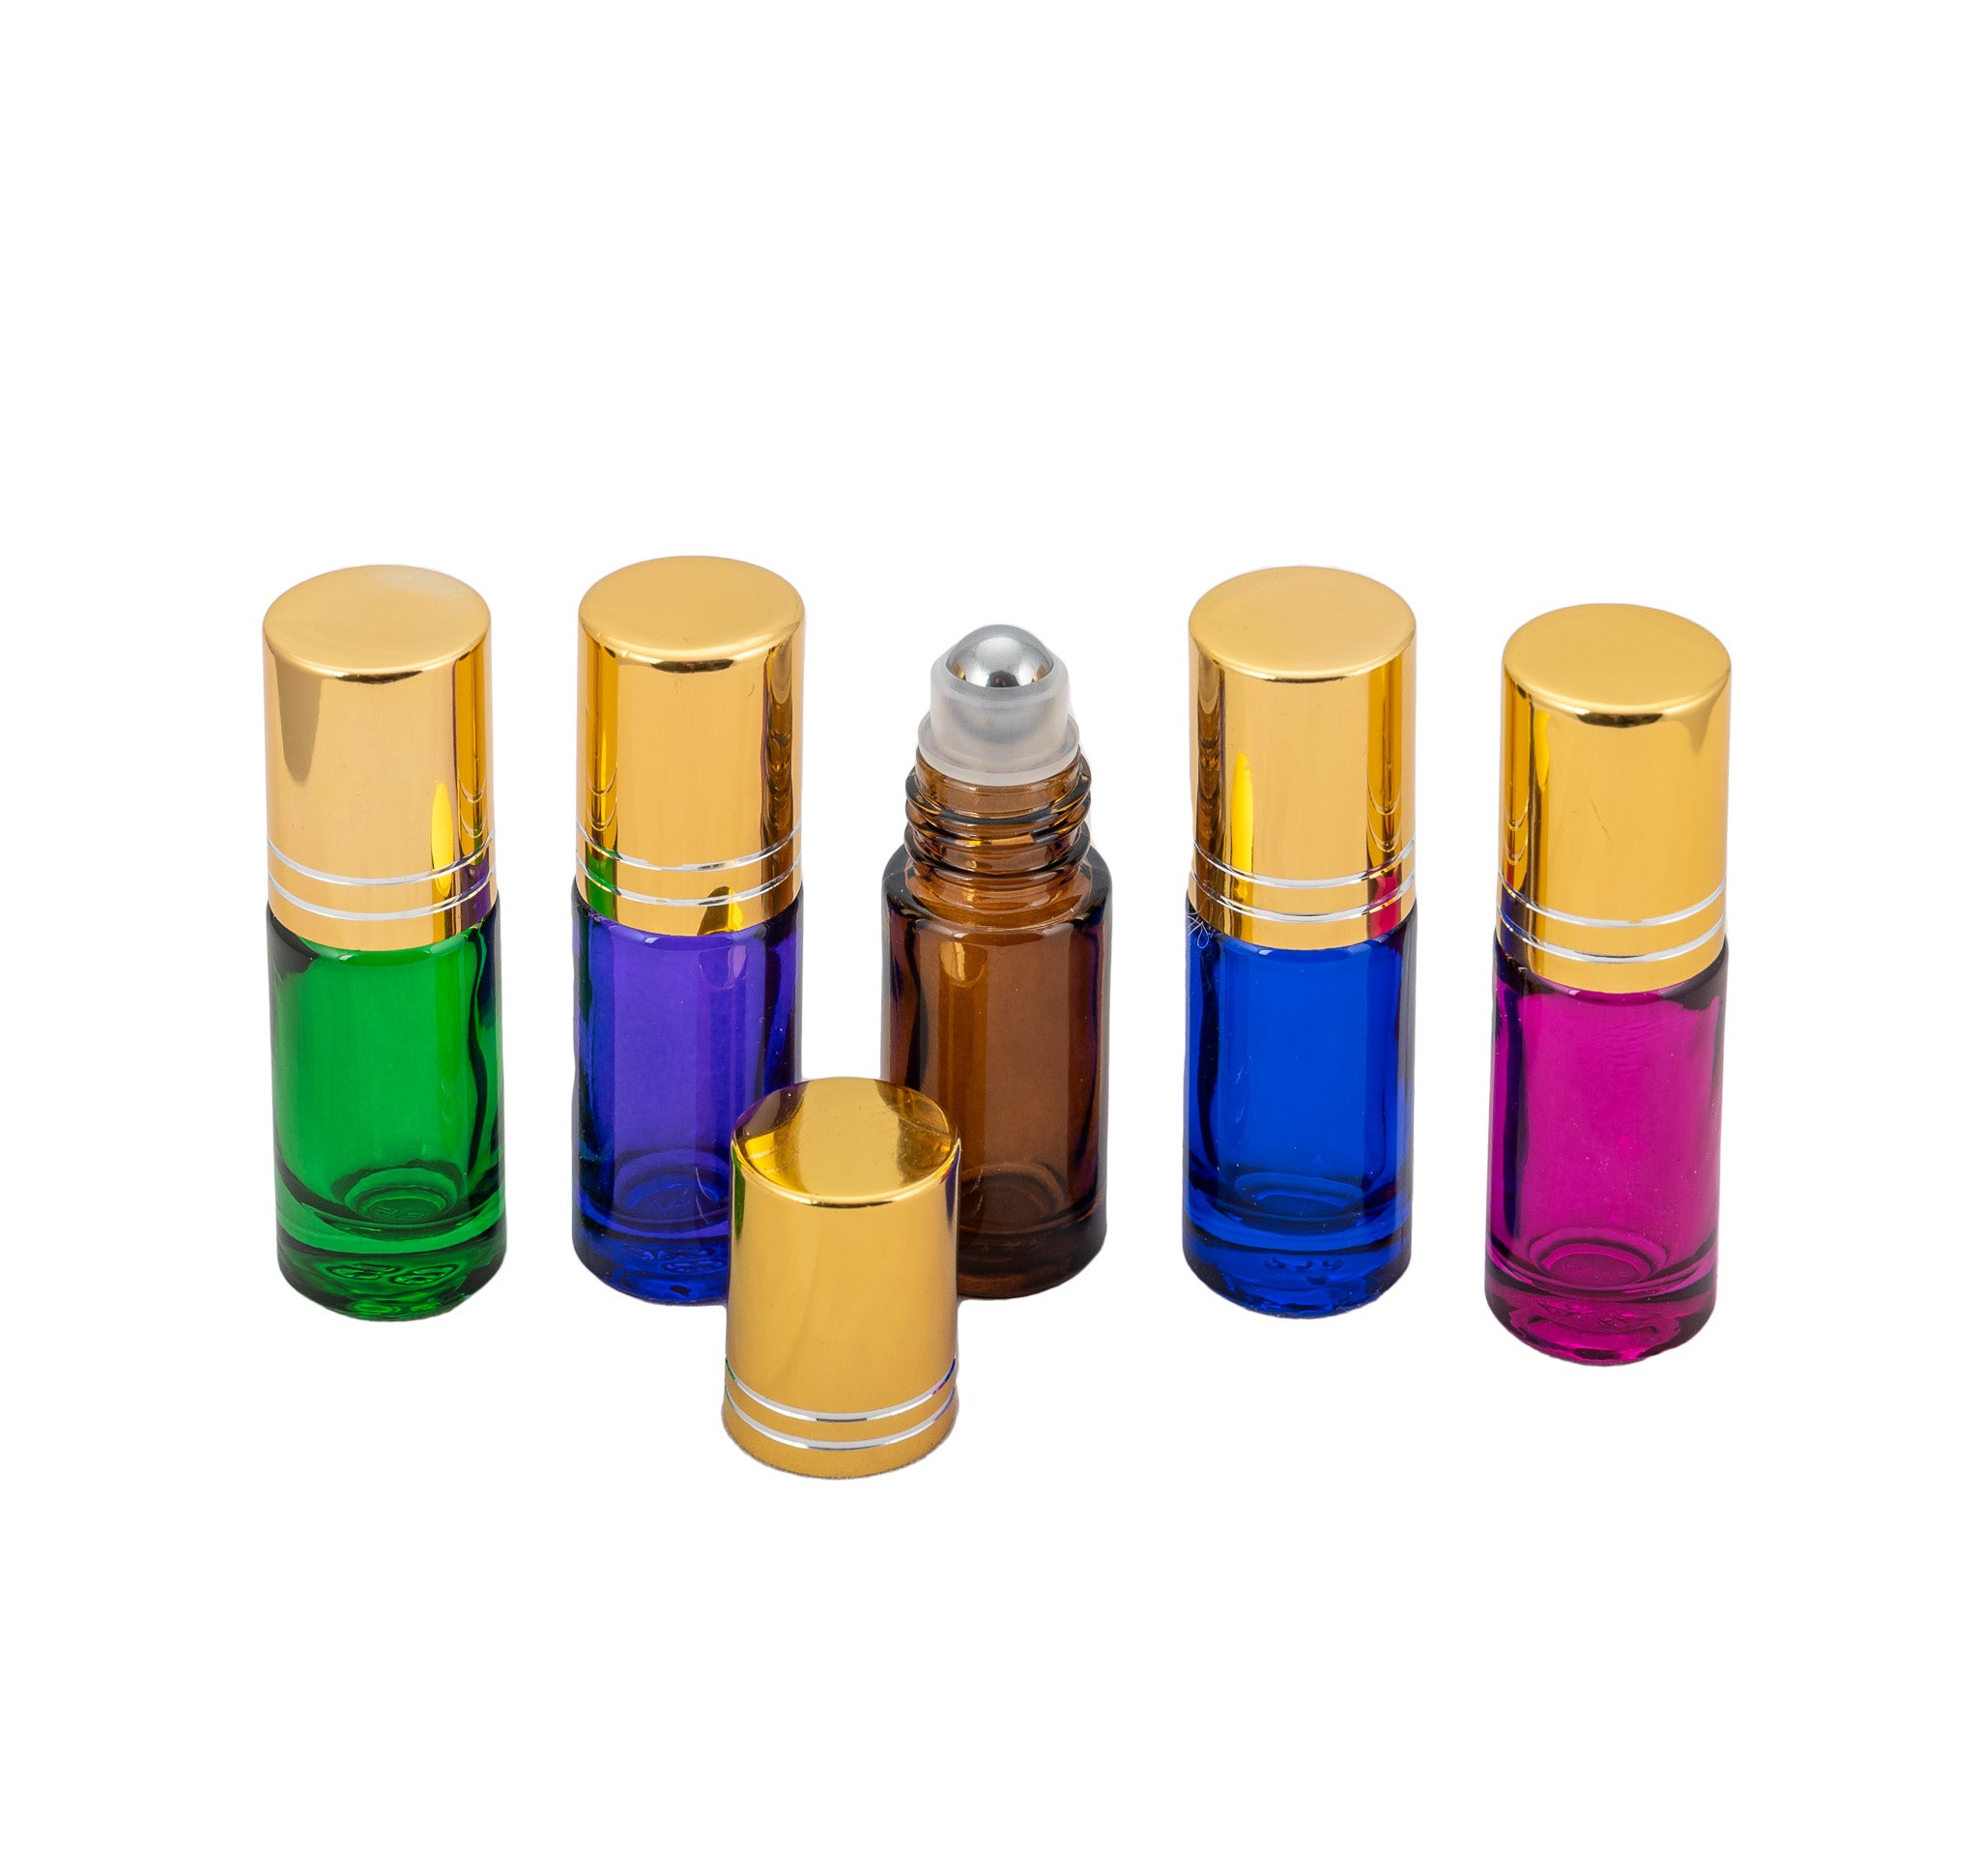 ROLLERFLASKE 5ml ELEGANT 5pk fem farger rollerflaske